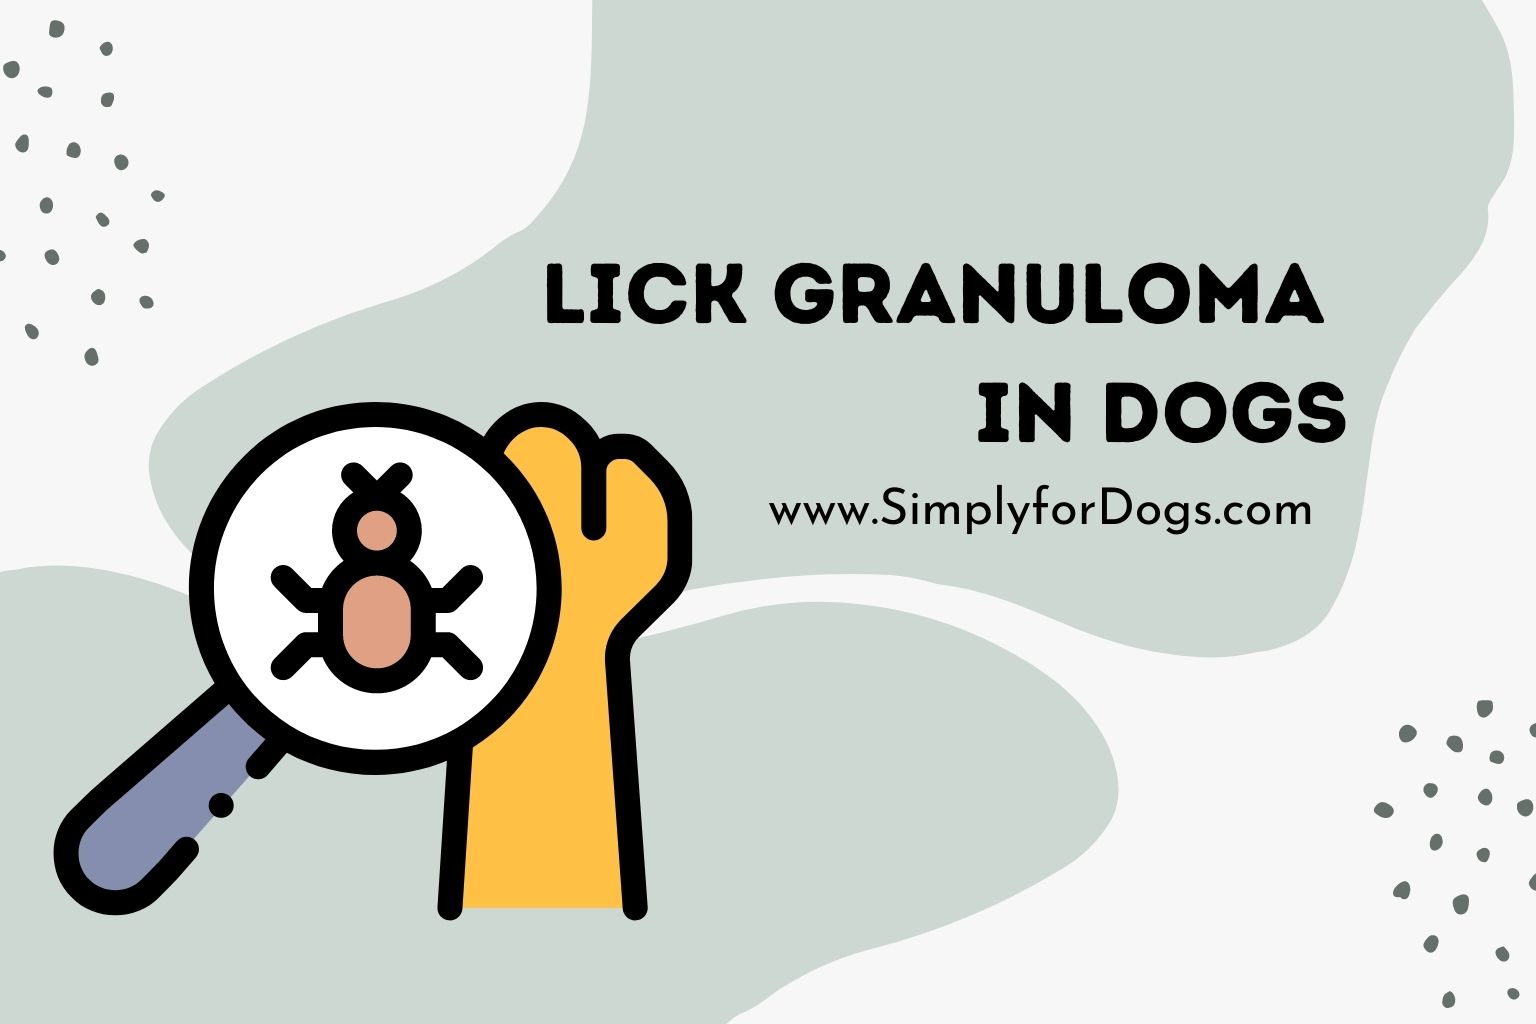 Lick Granuloma in Dogs